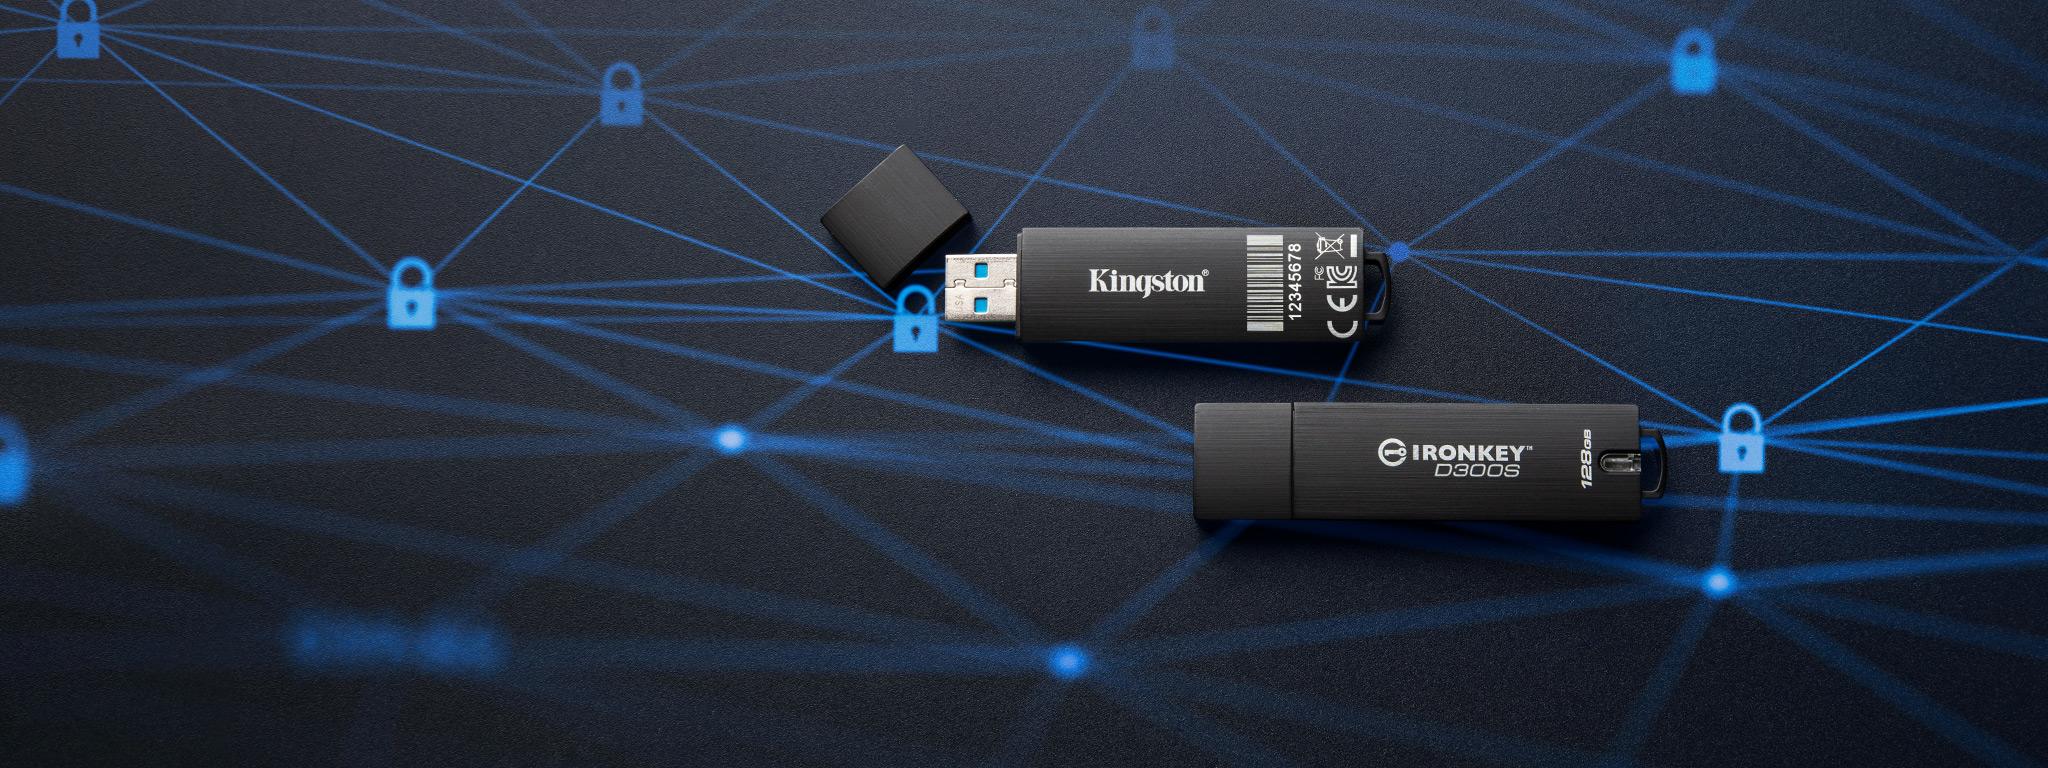 两个 IronKey D300S USB 闪存盘位于黑色平面，锁定图标图形为蓝色